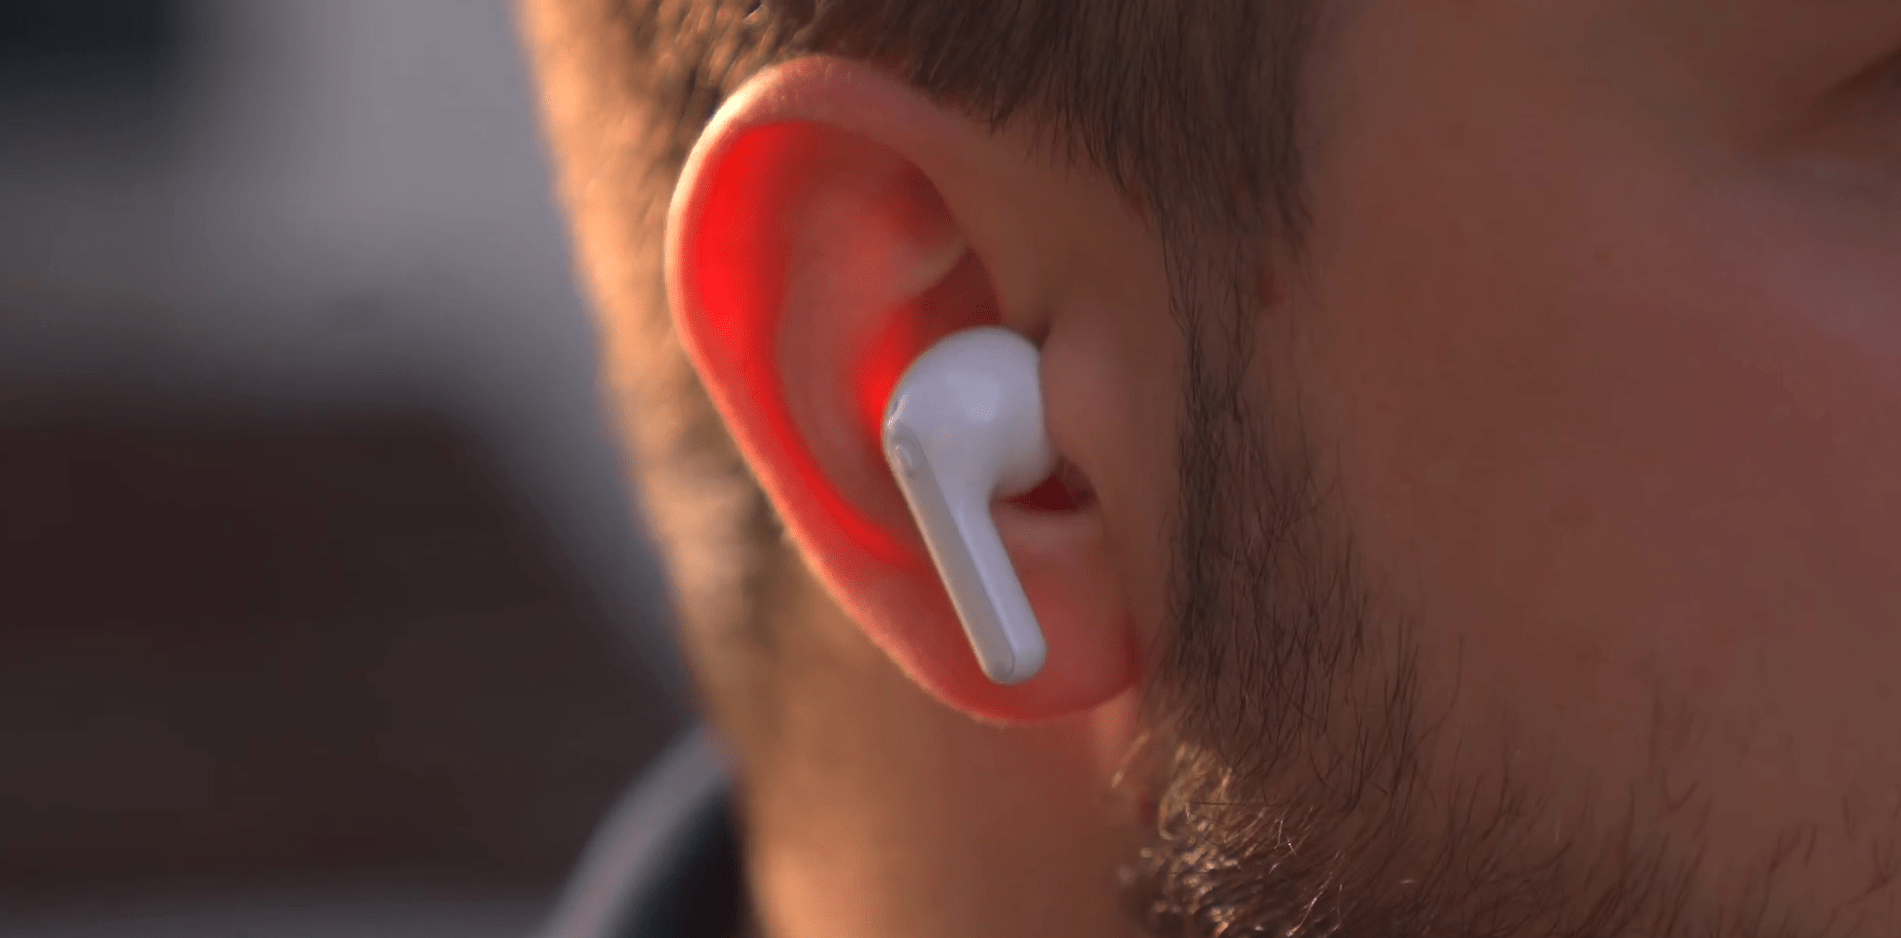 LG Tone Free
jak wybrać słuchawki bezprzewodowe